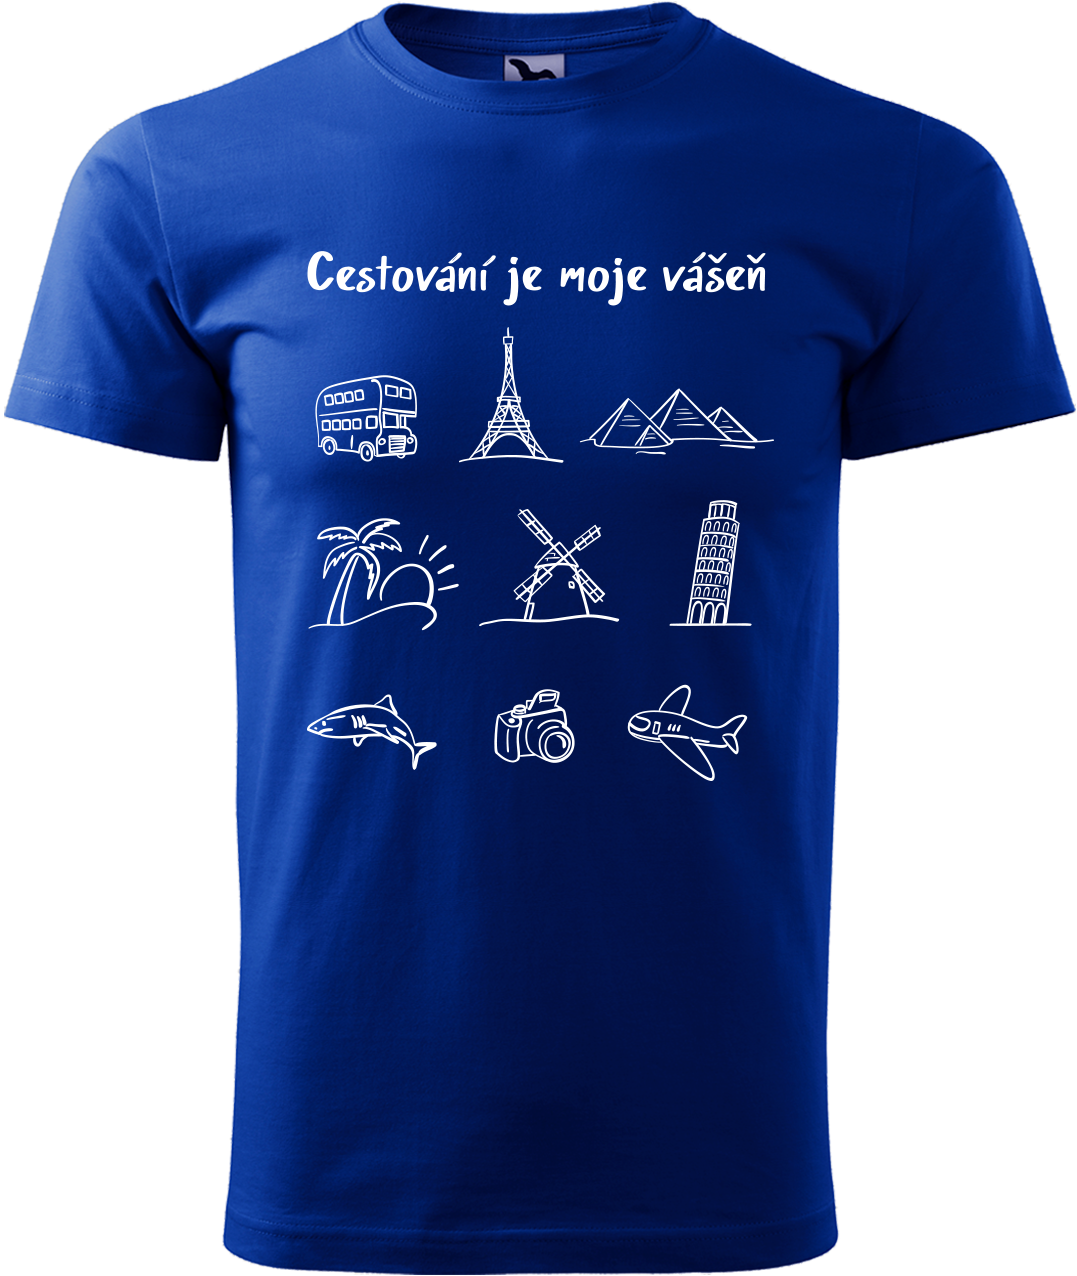 Pánské cestovatelské tričko - Cestování je moje vášeň Velikost: L, Barva: Královská modrá (05)